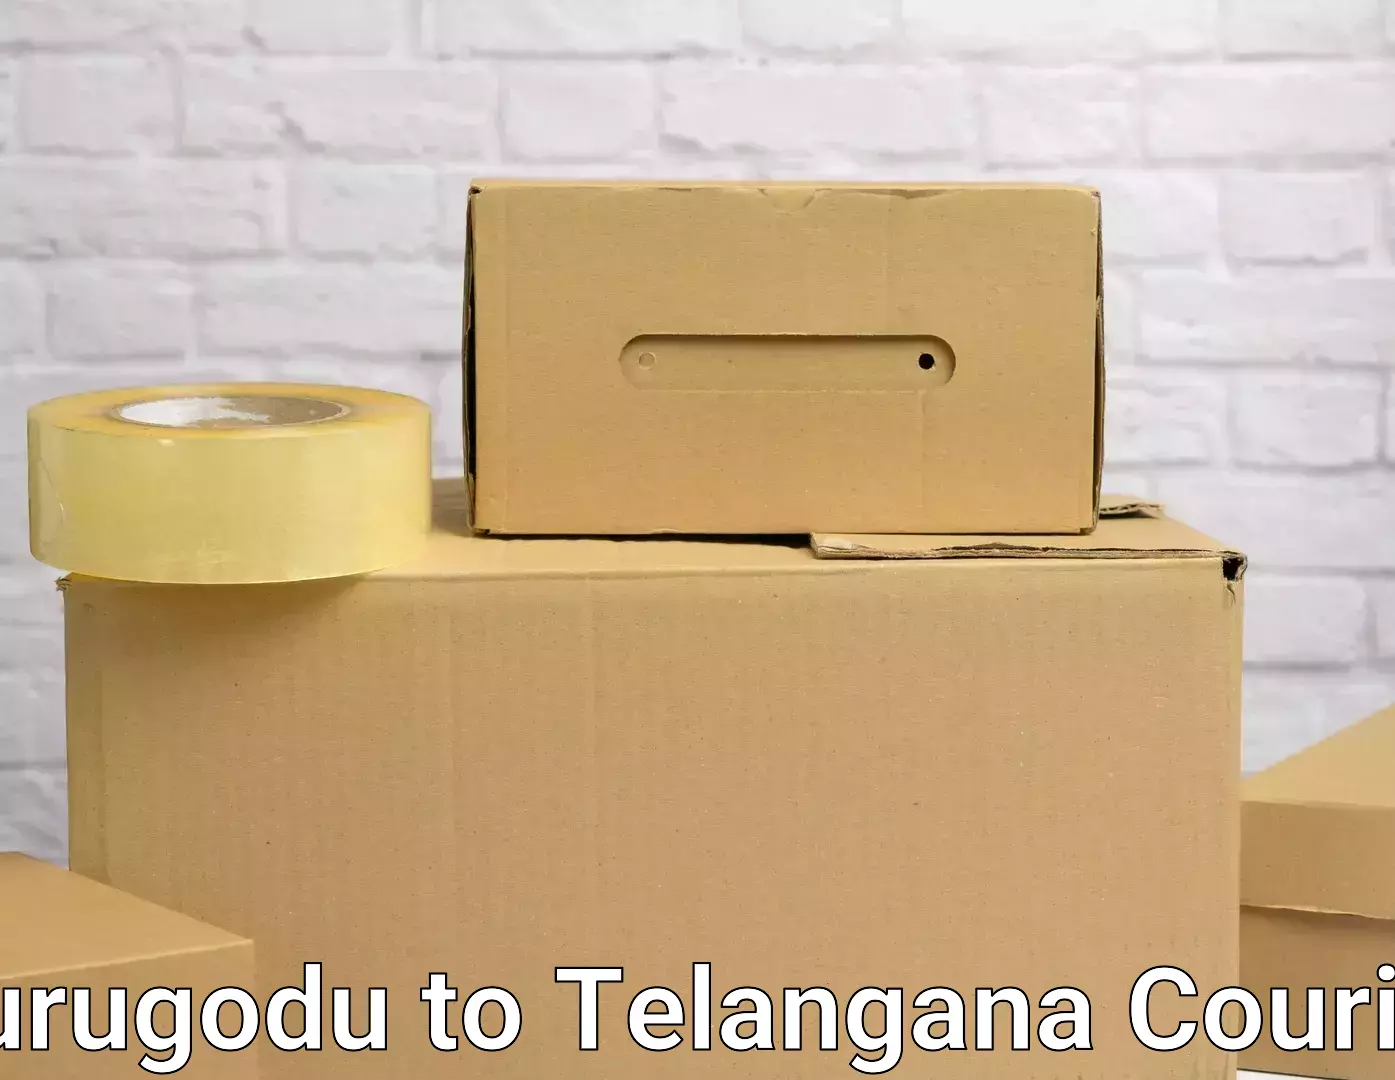 Online household goods transport Kurugodu to Telangana